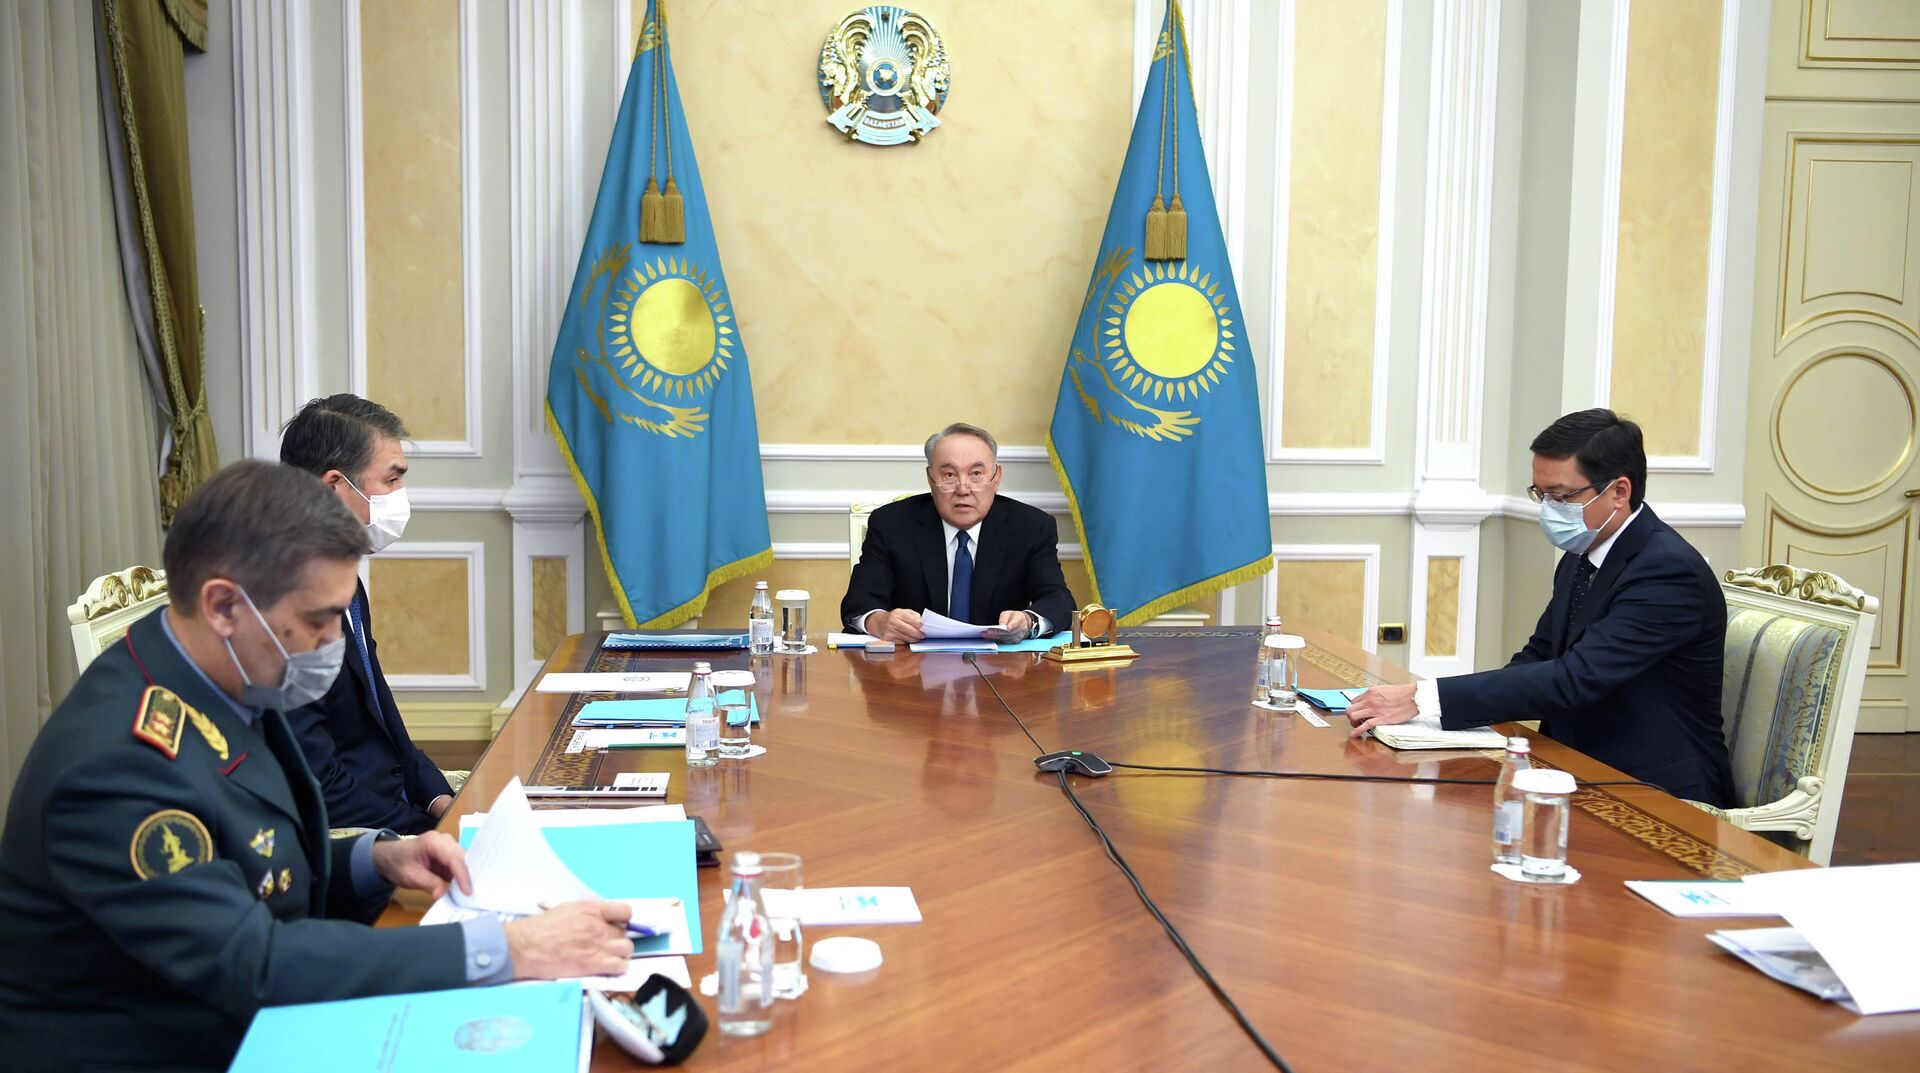 Назарбаев поручил выработать новую стратегию нацбезопасности Казахстана - Sputnik Казахстан, 1920, 03.02.2021